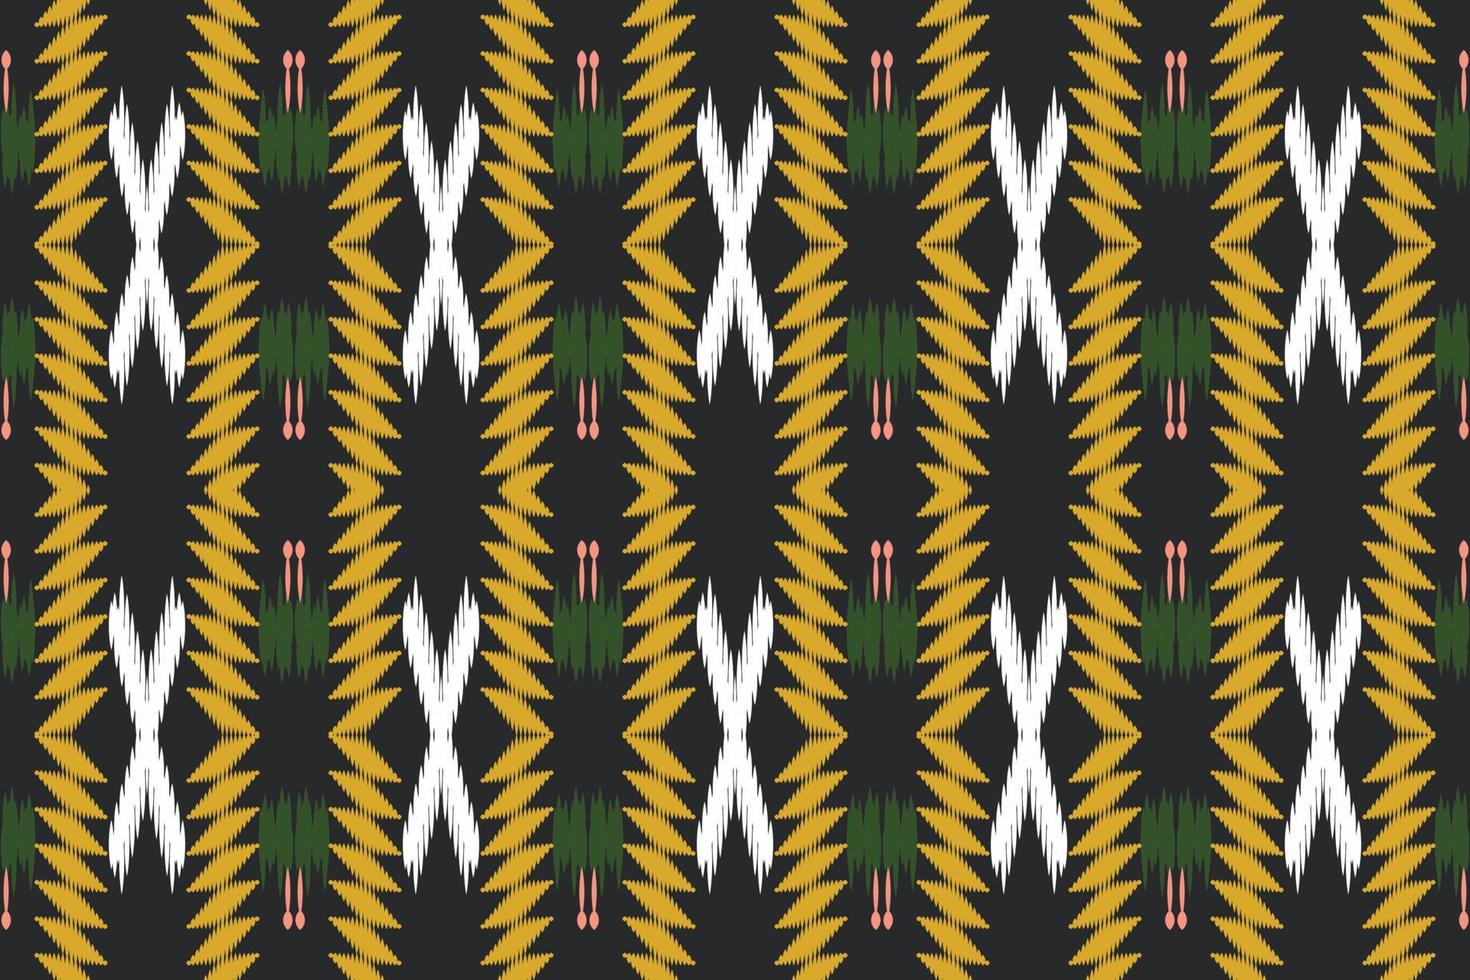 Mughal ikat disegni tribale gallone Borneo scandinavo batik boemo struttura digitale vettore design per Stampa saree Kurti tessuto spazzola simboli campioni